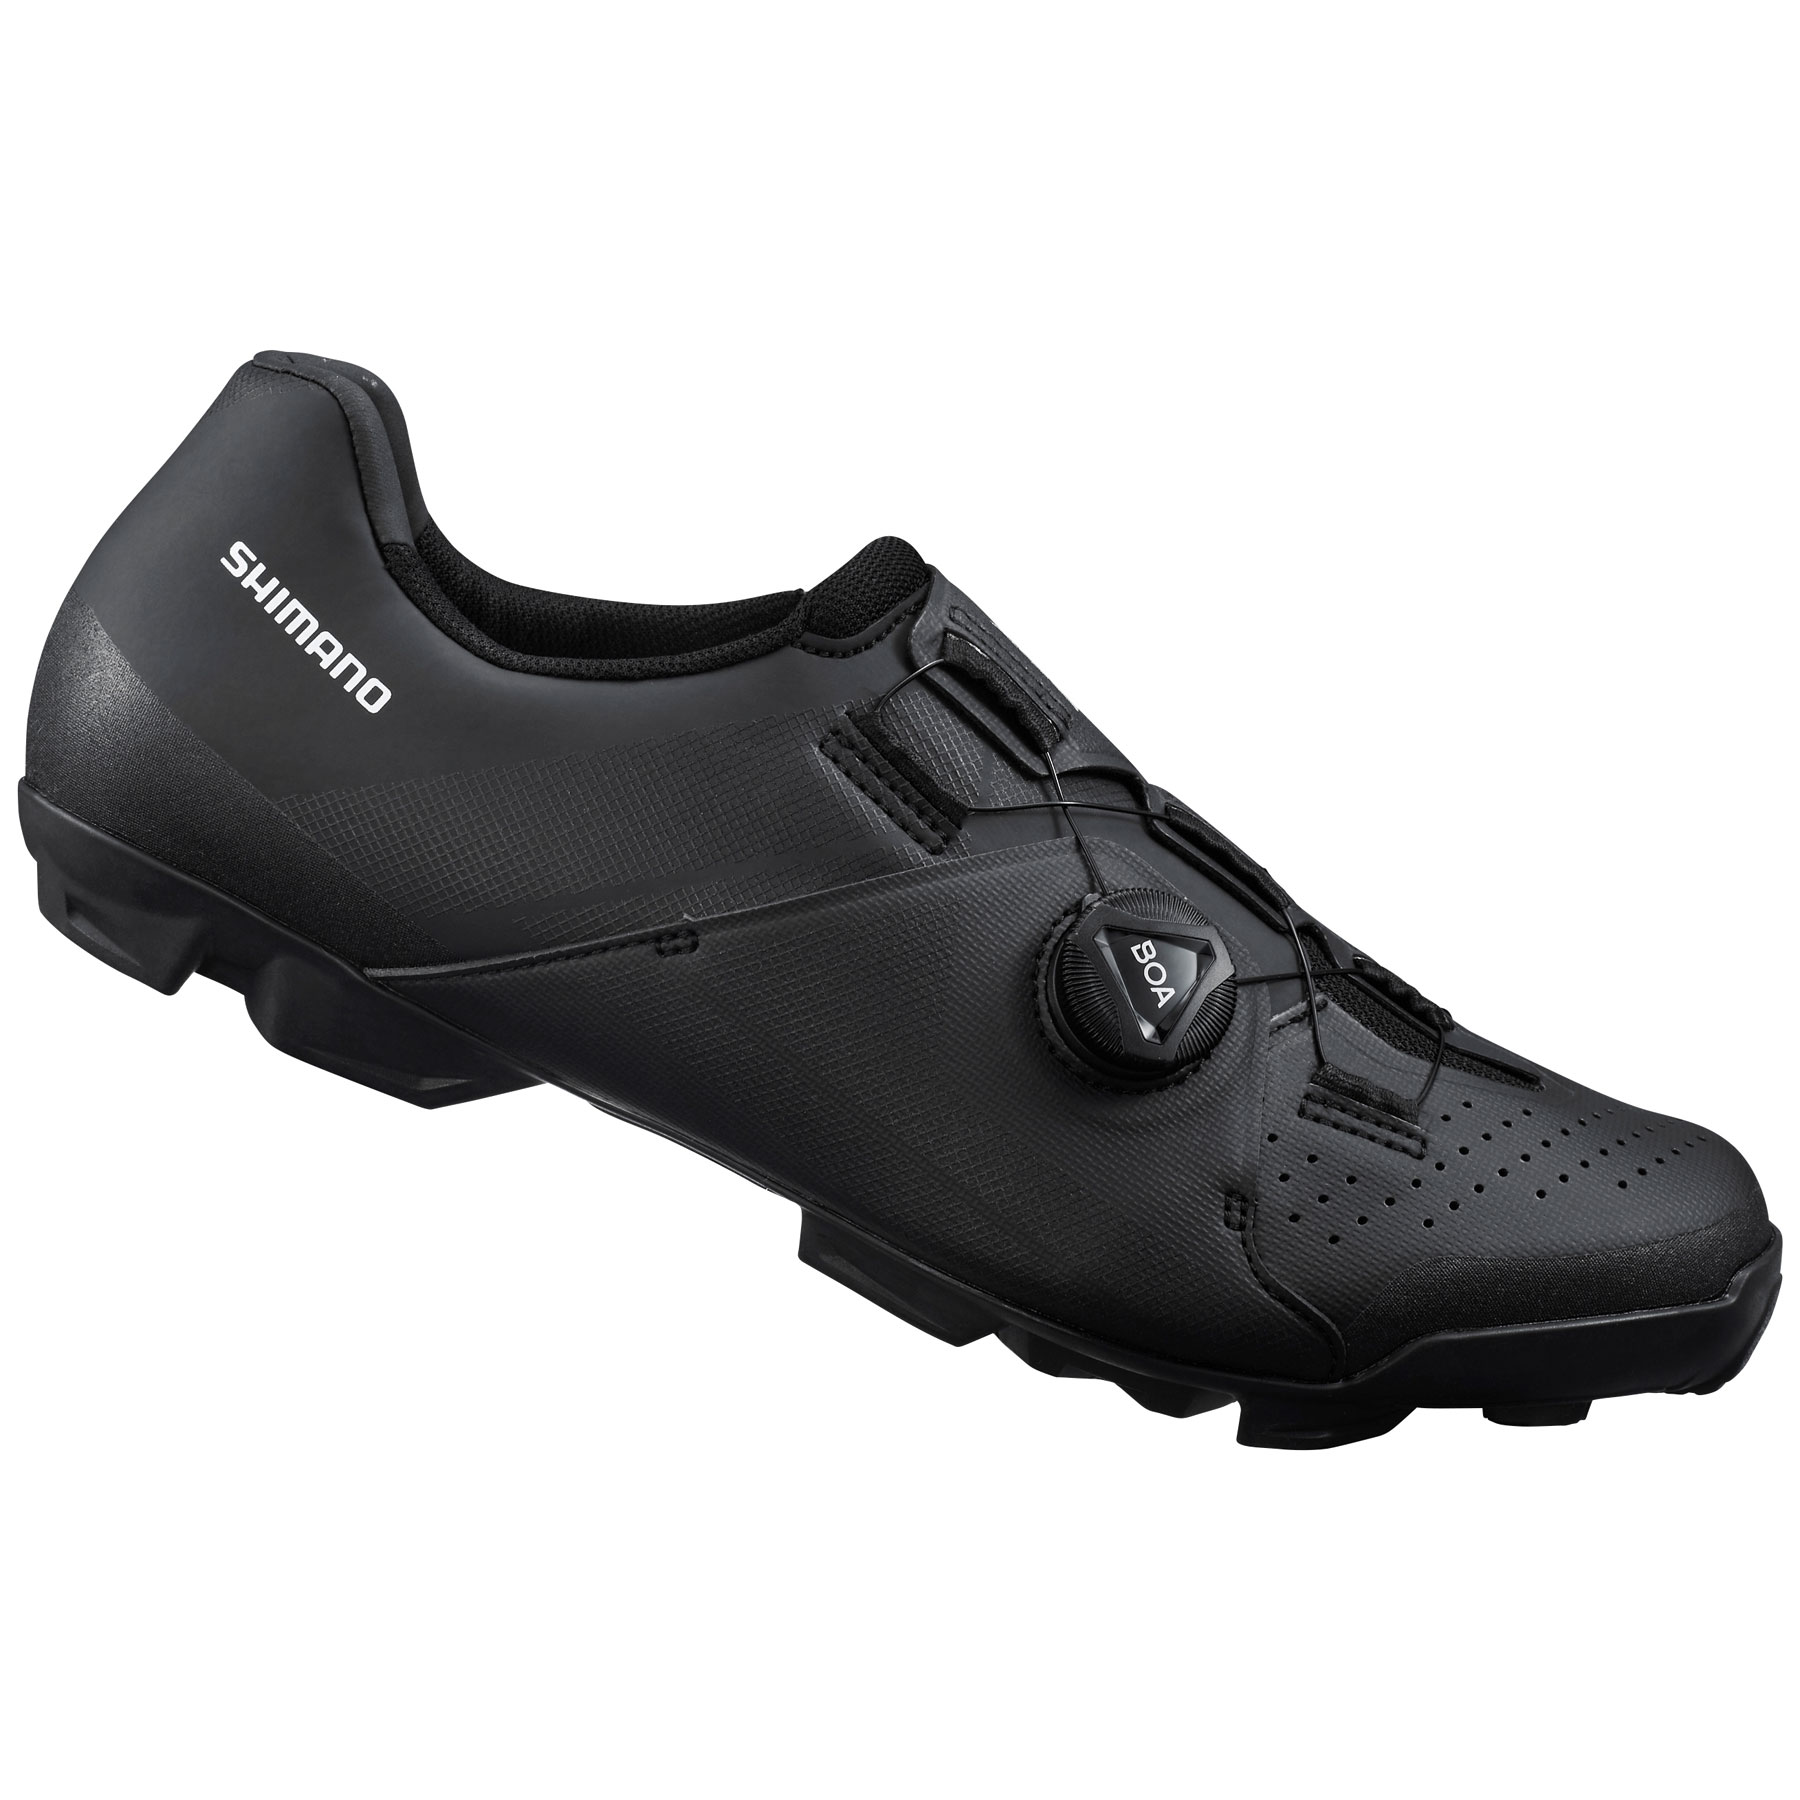 Produktbild von Shimano SH-XC300 MTB Schuhe Herren - Breit - schwarz